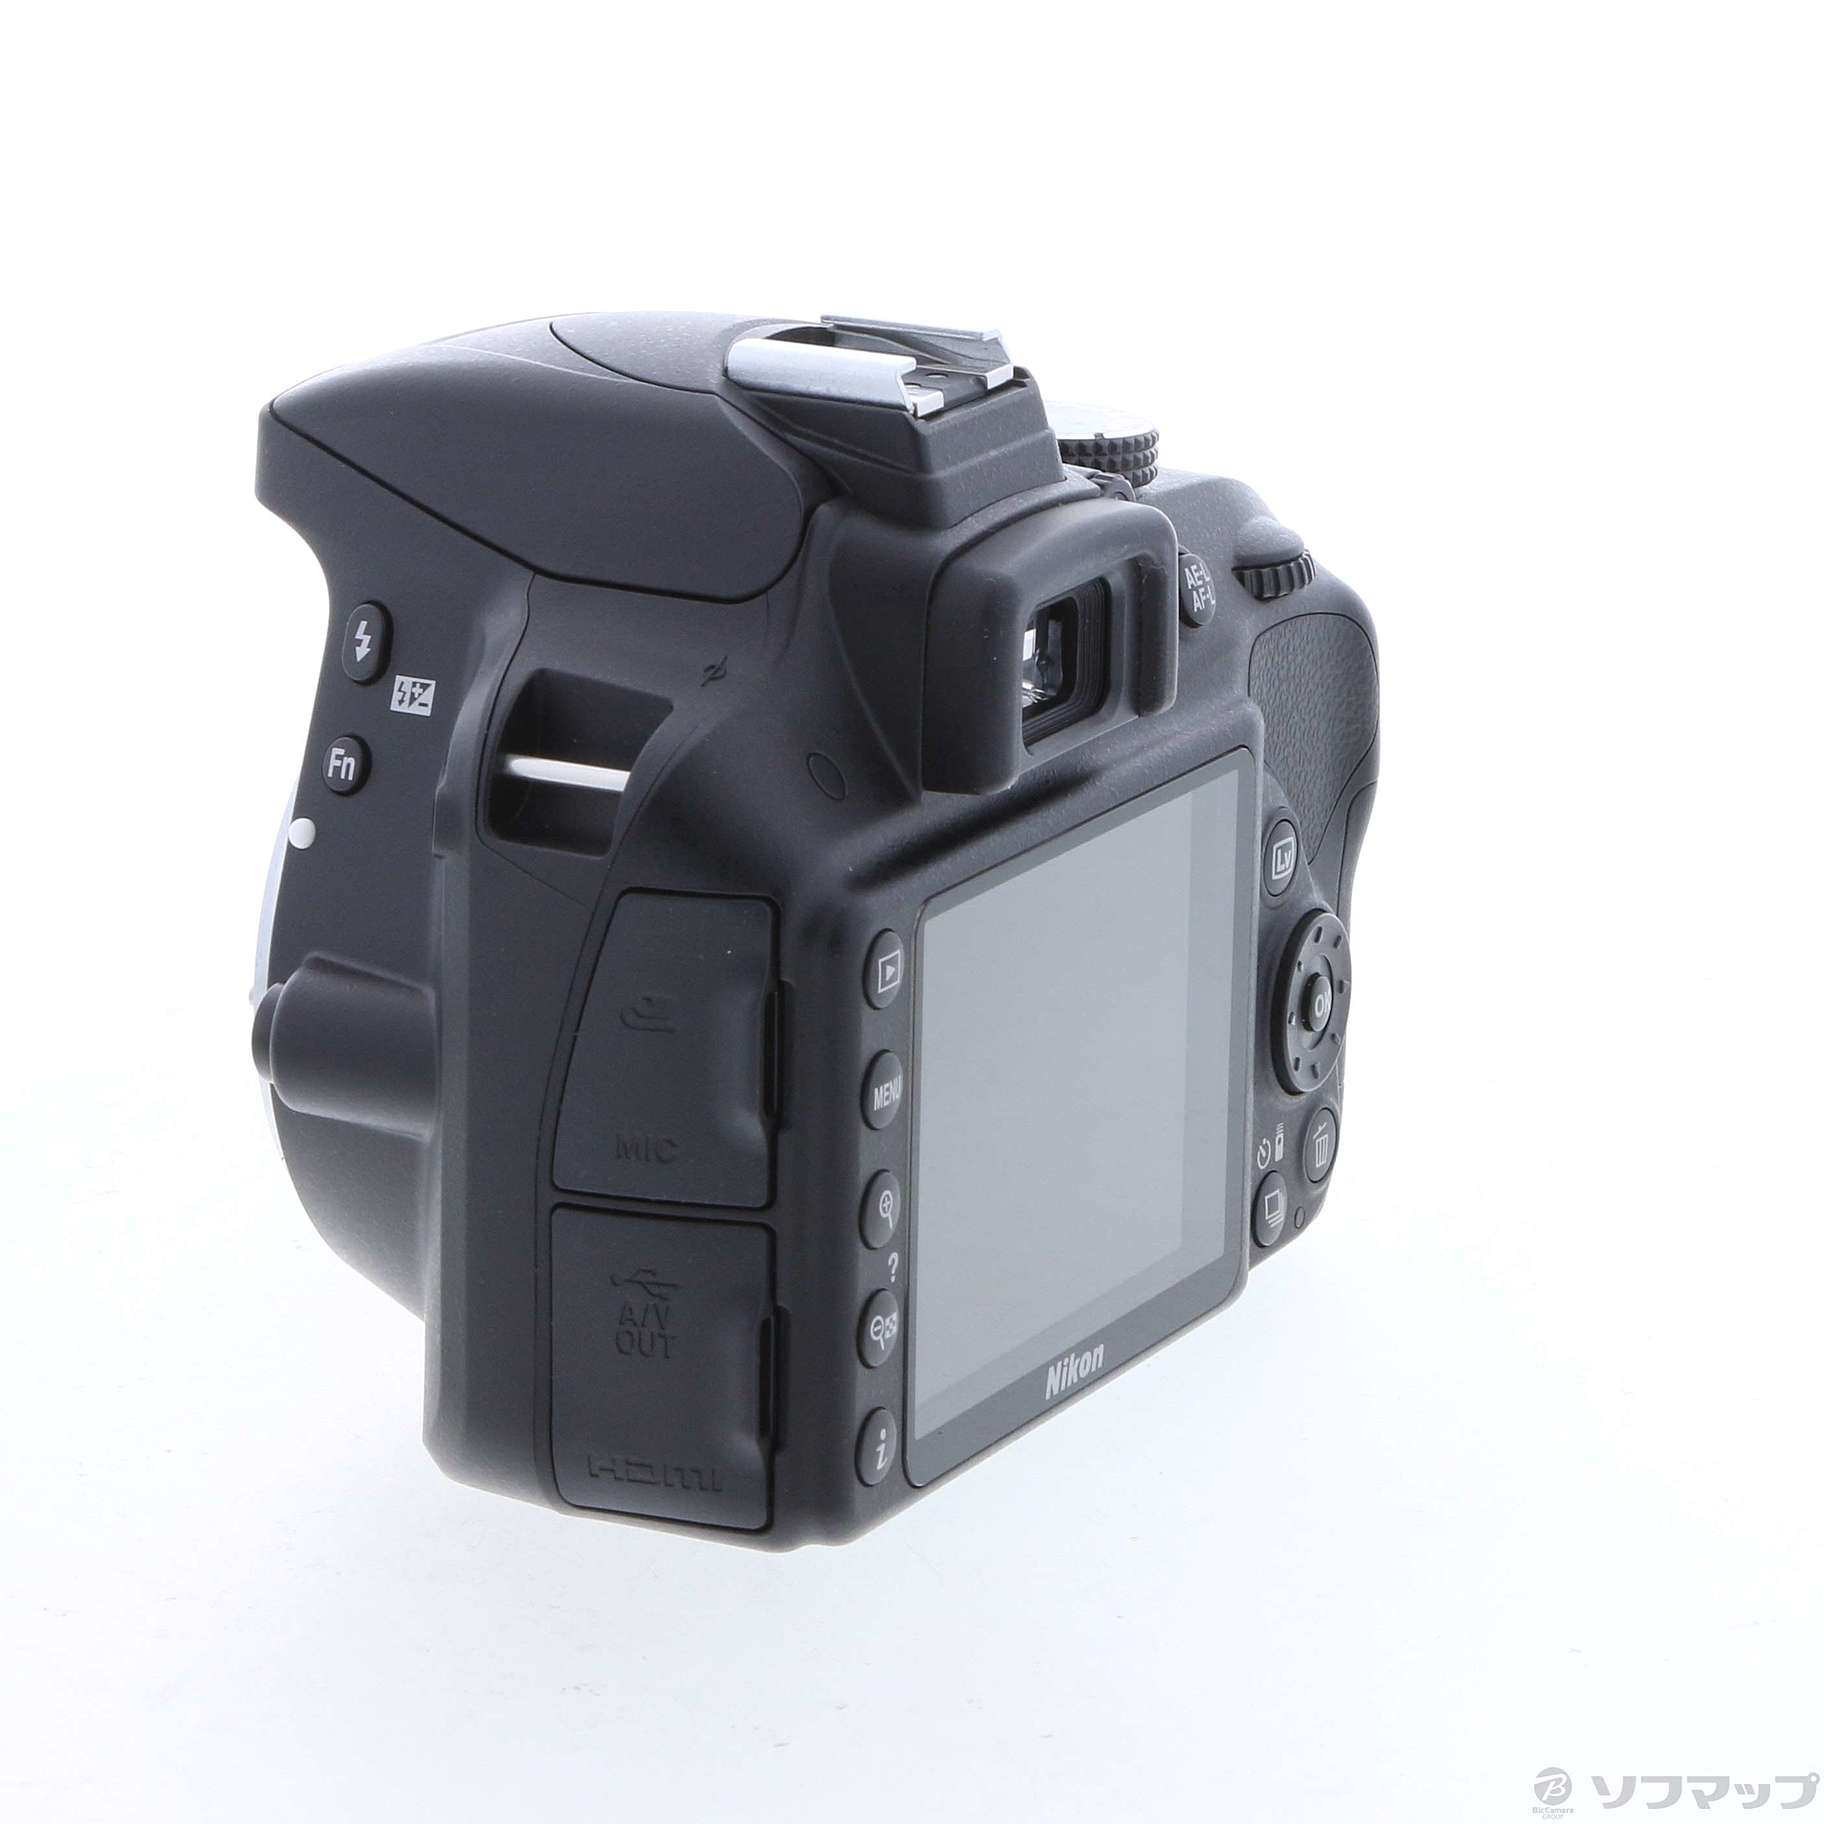 Nikon d3300 ジャンク品